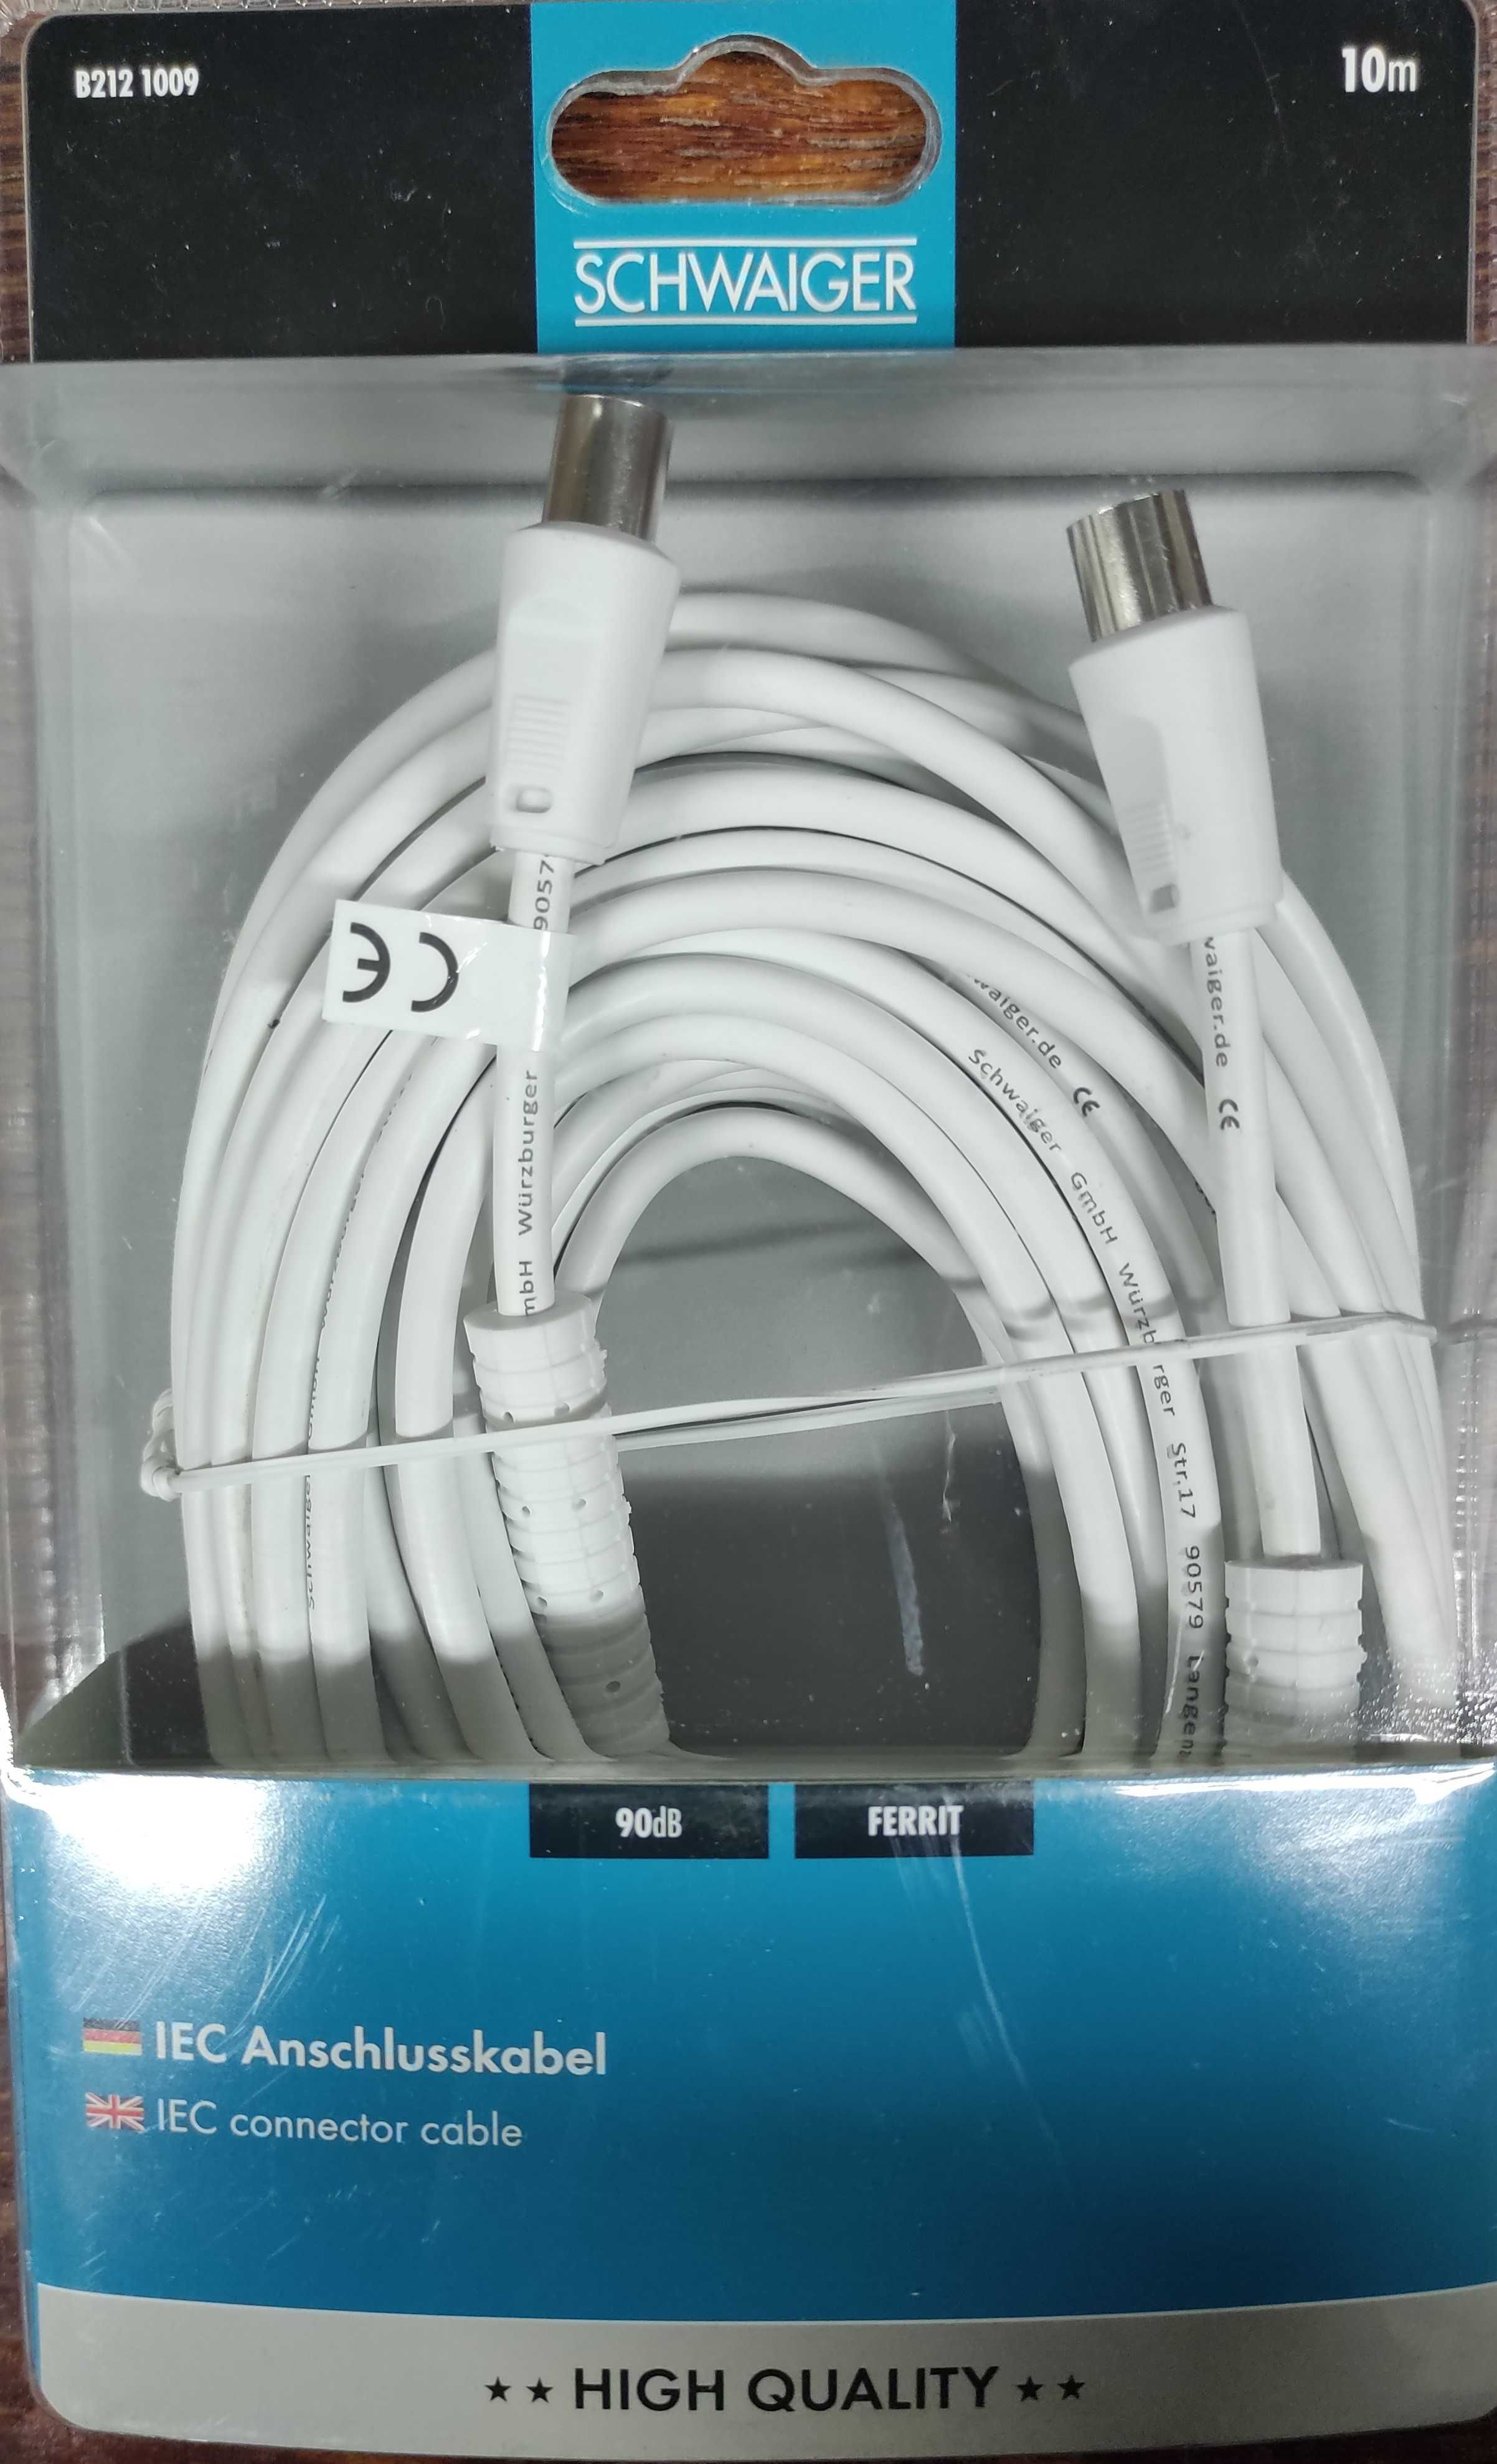 Kabel połączeniowy IEC schwaiger B212 10m